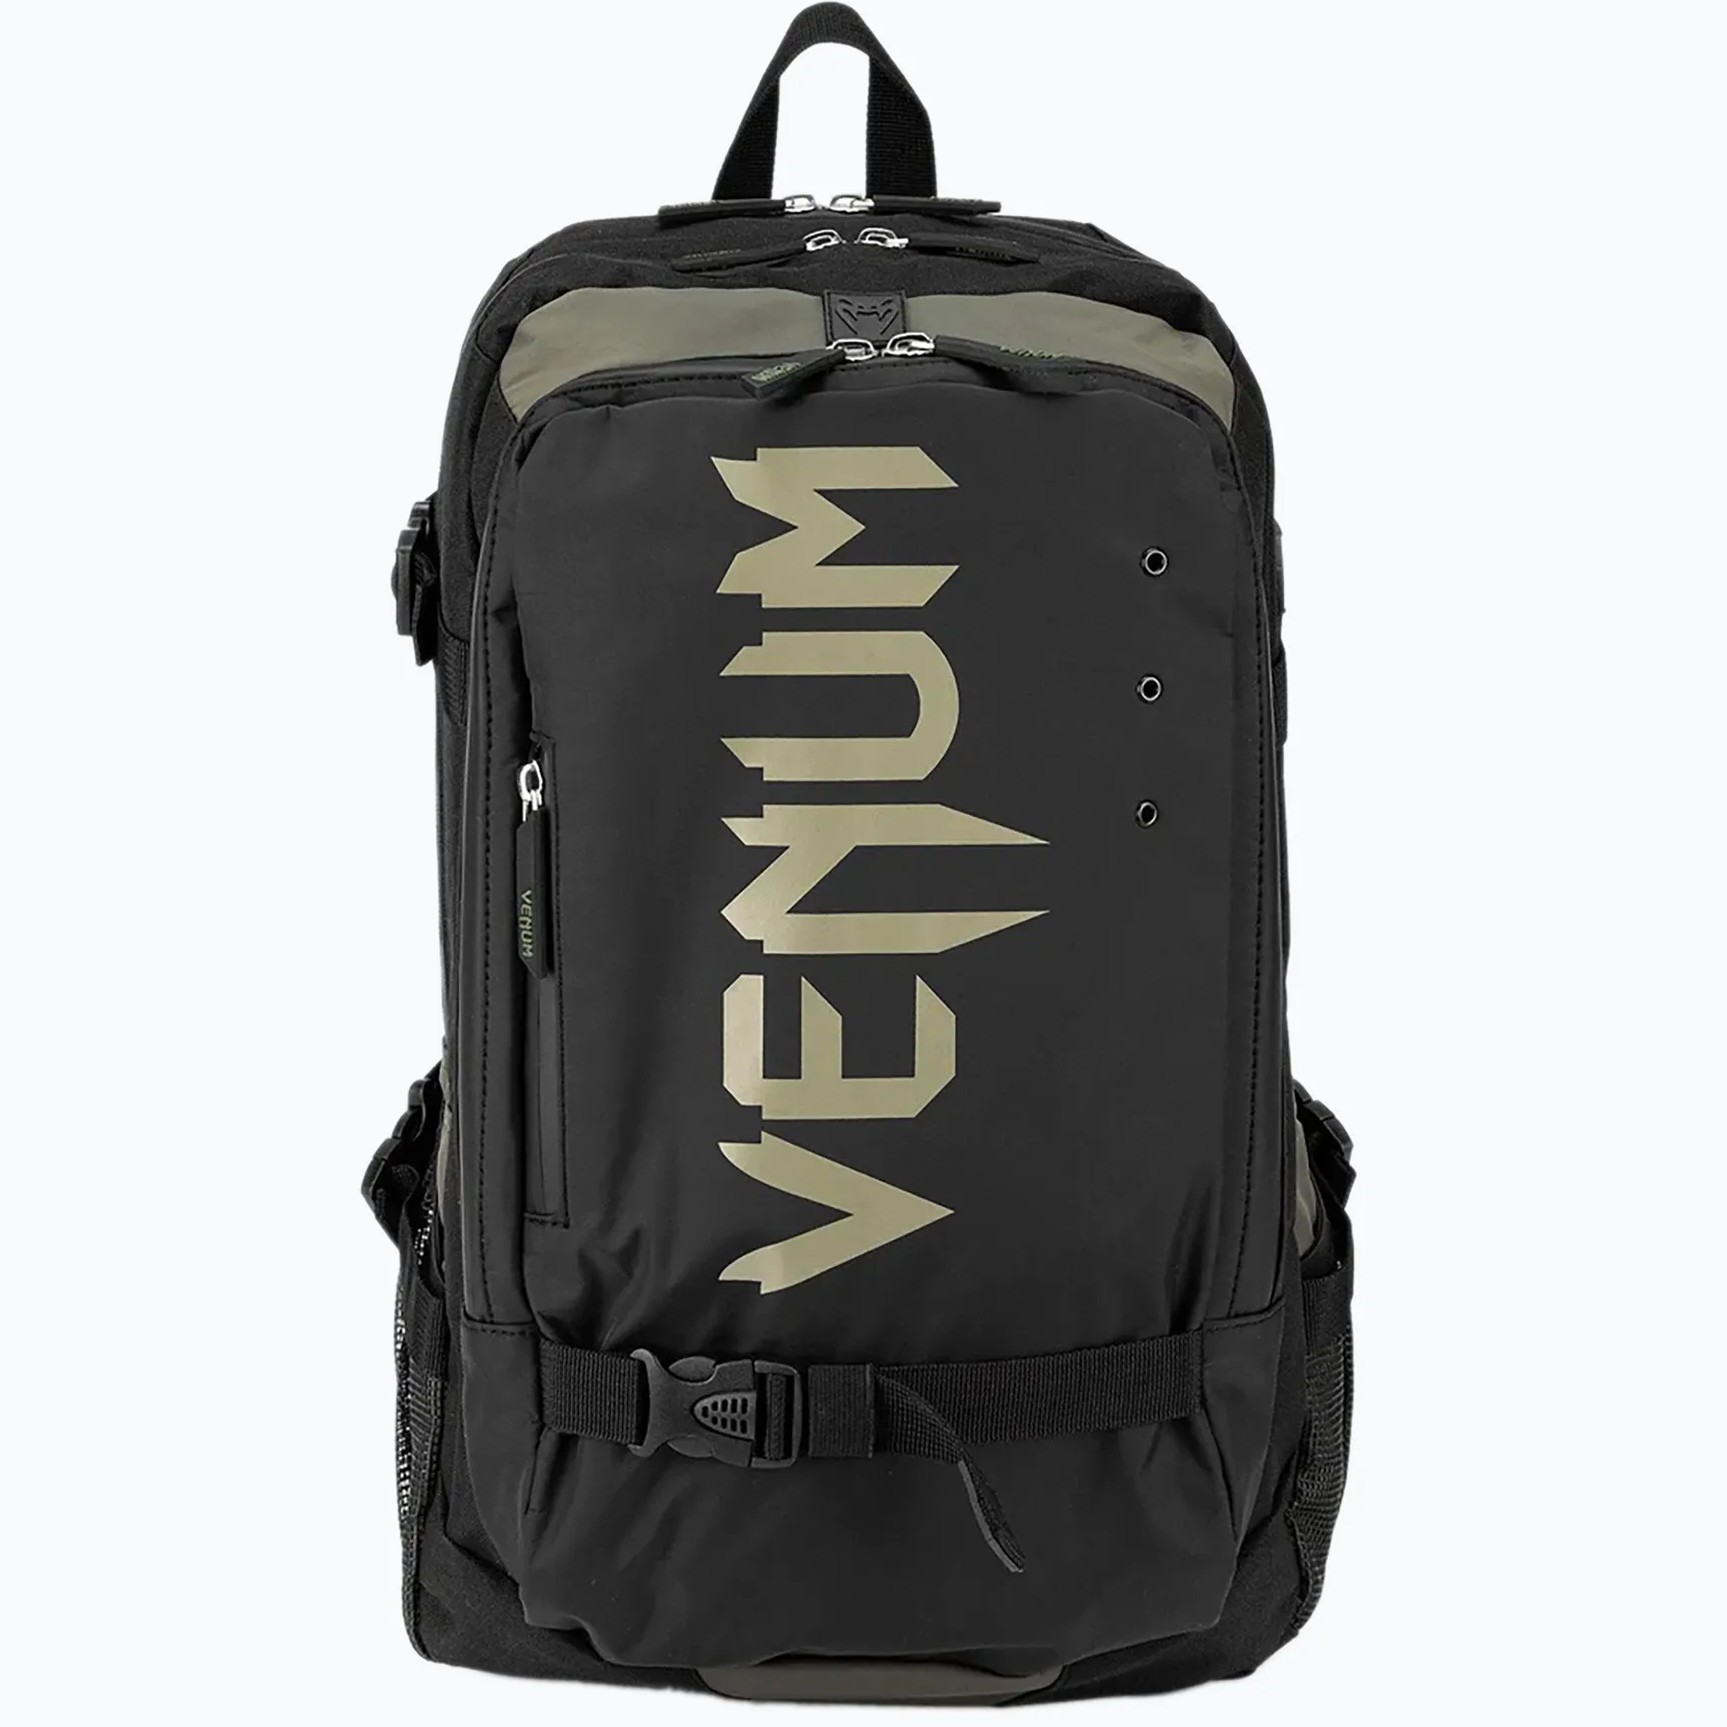  Рюкзак Venum Challenger Pro Evo черный хаки 